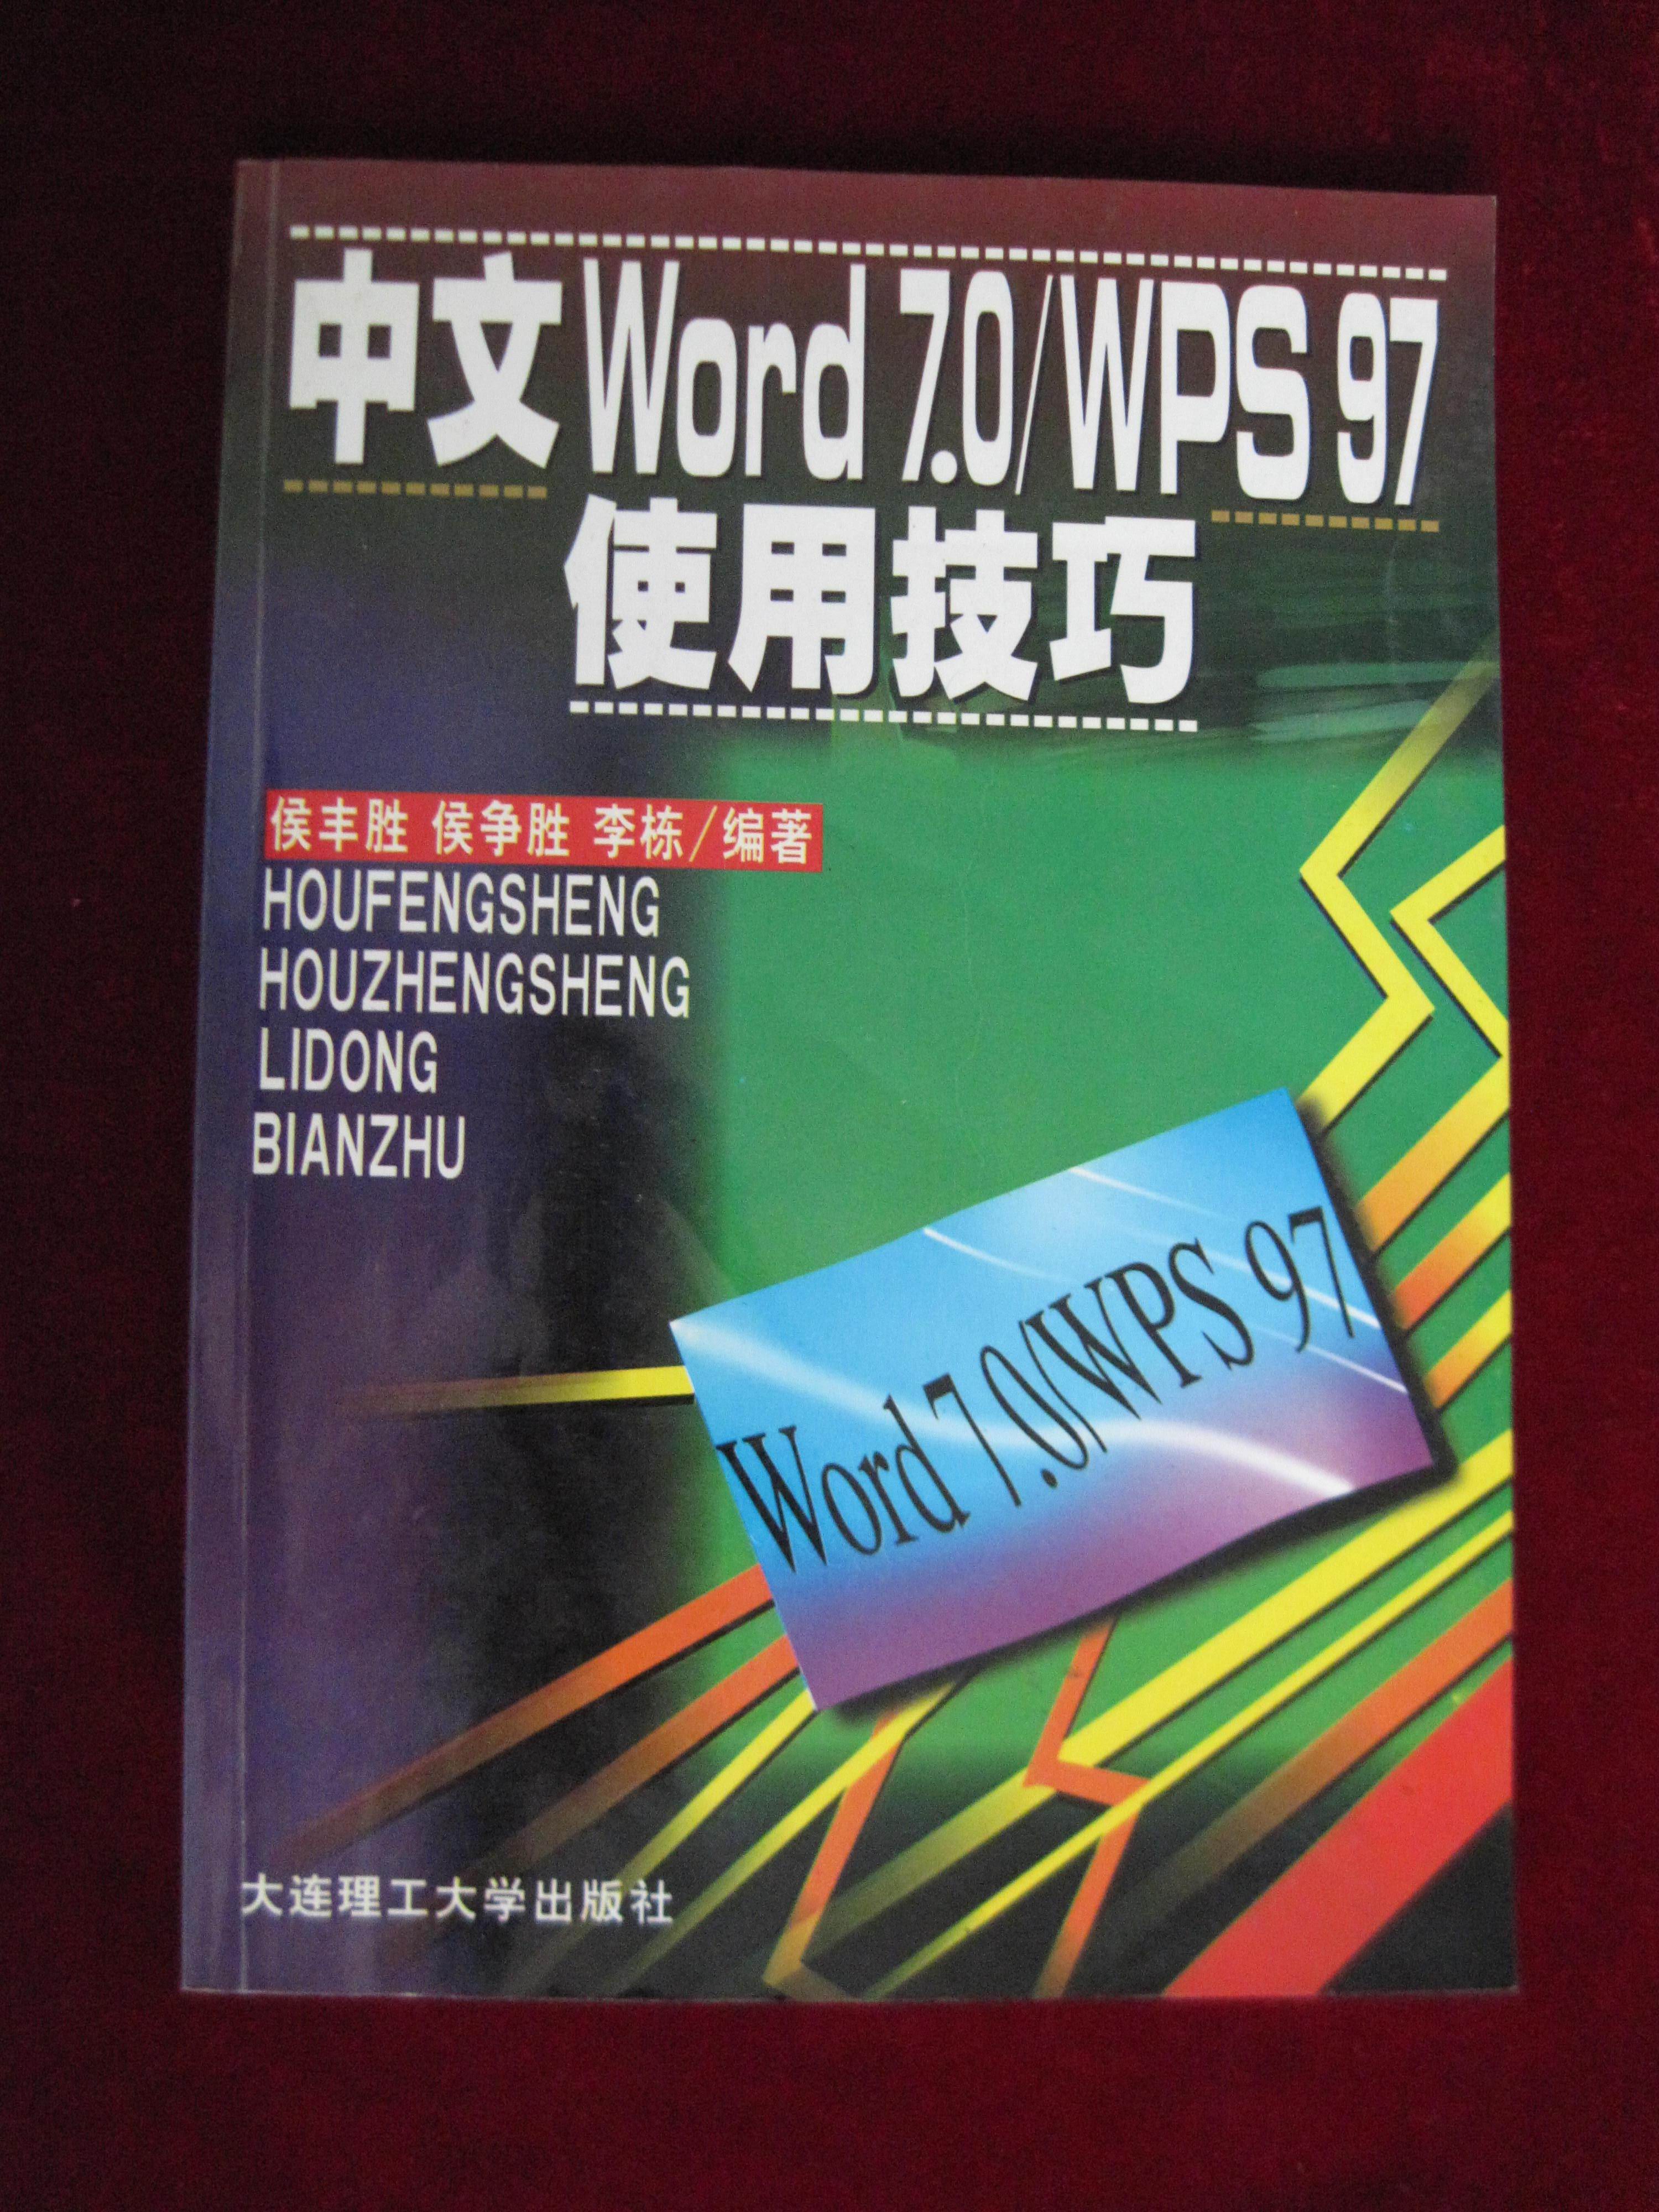 中文Word7.0/WPS97使用技巧